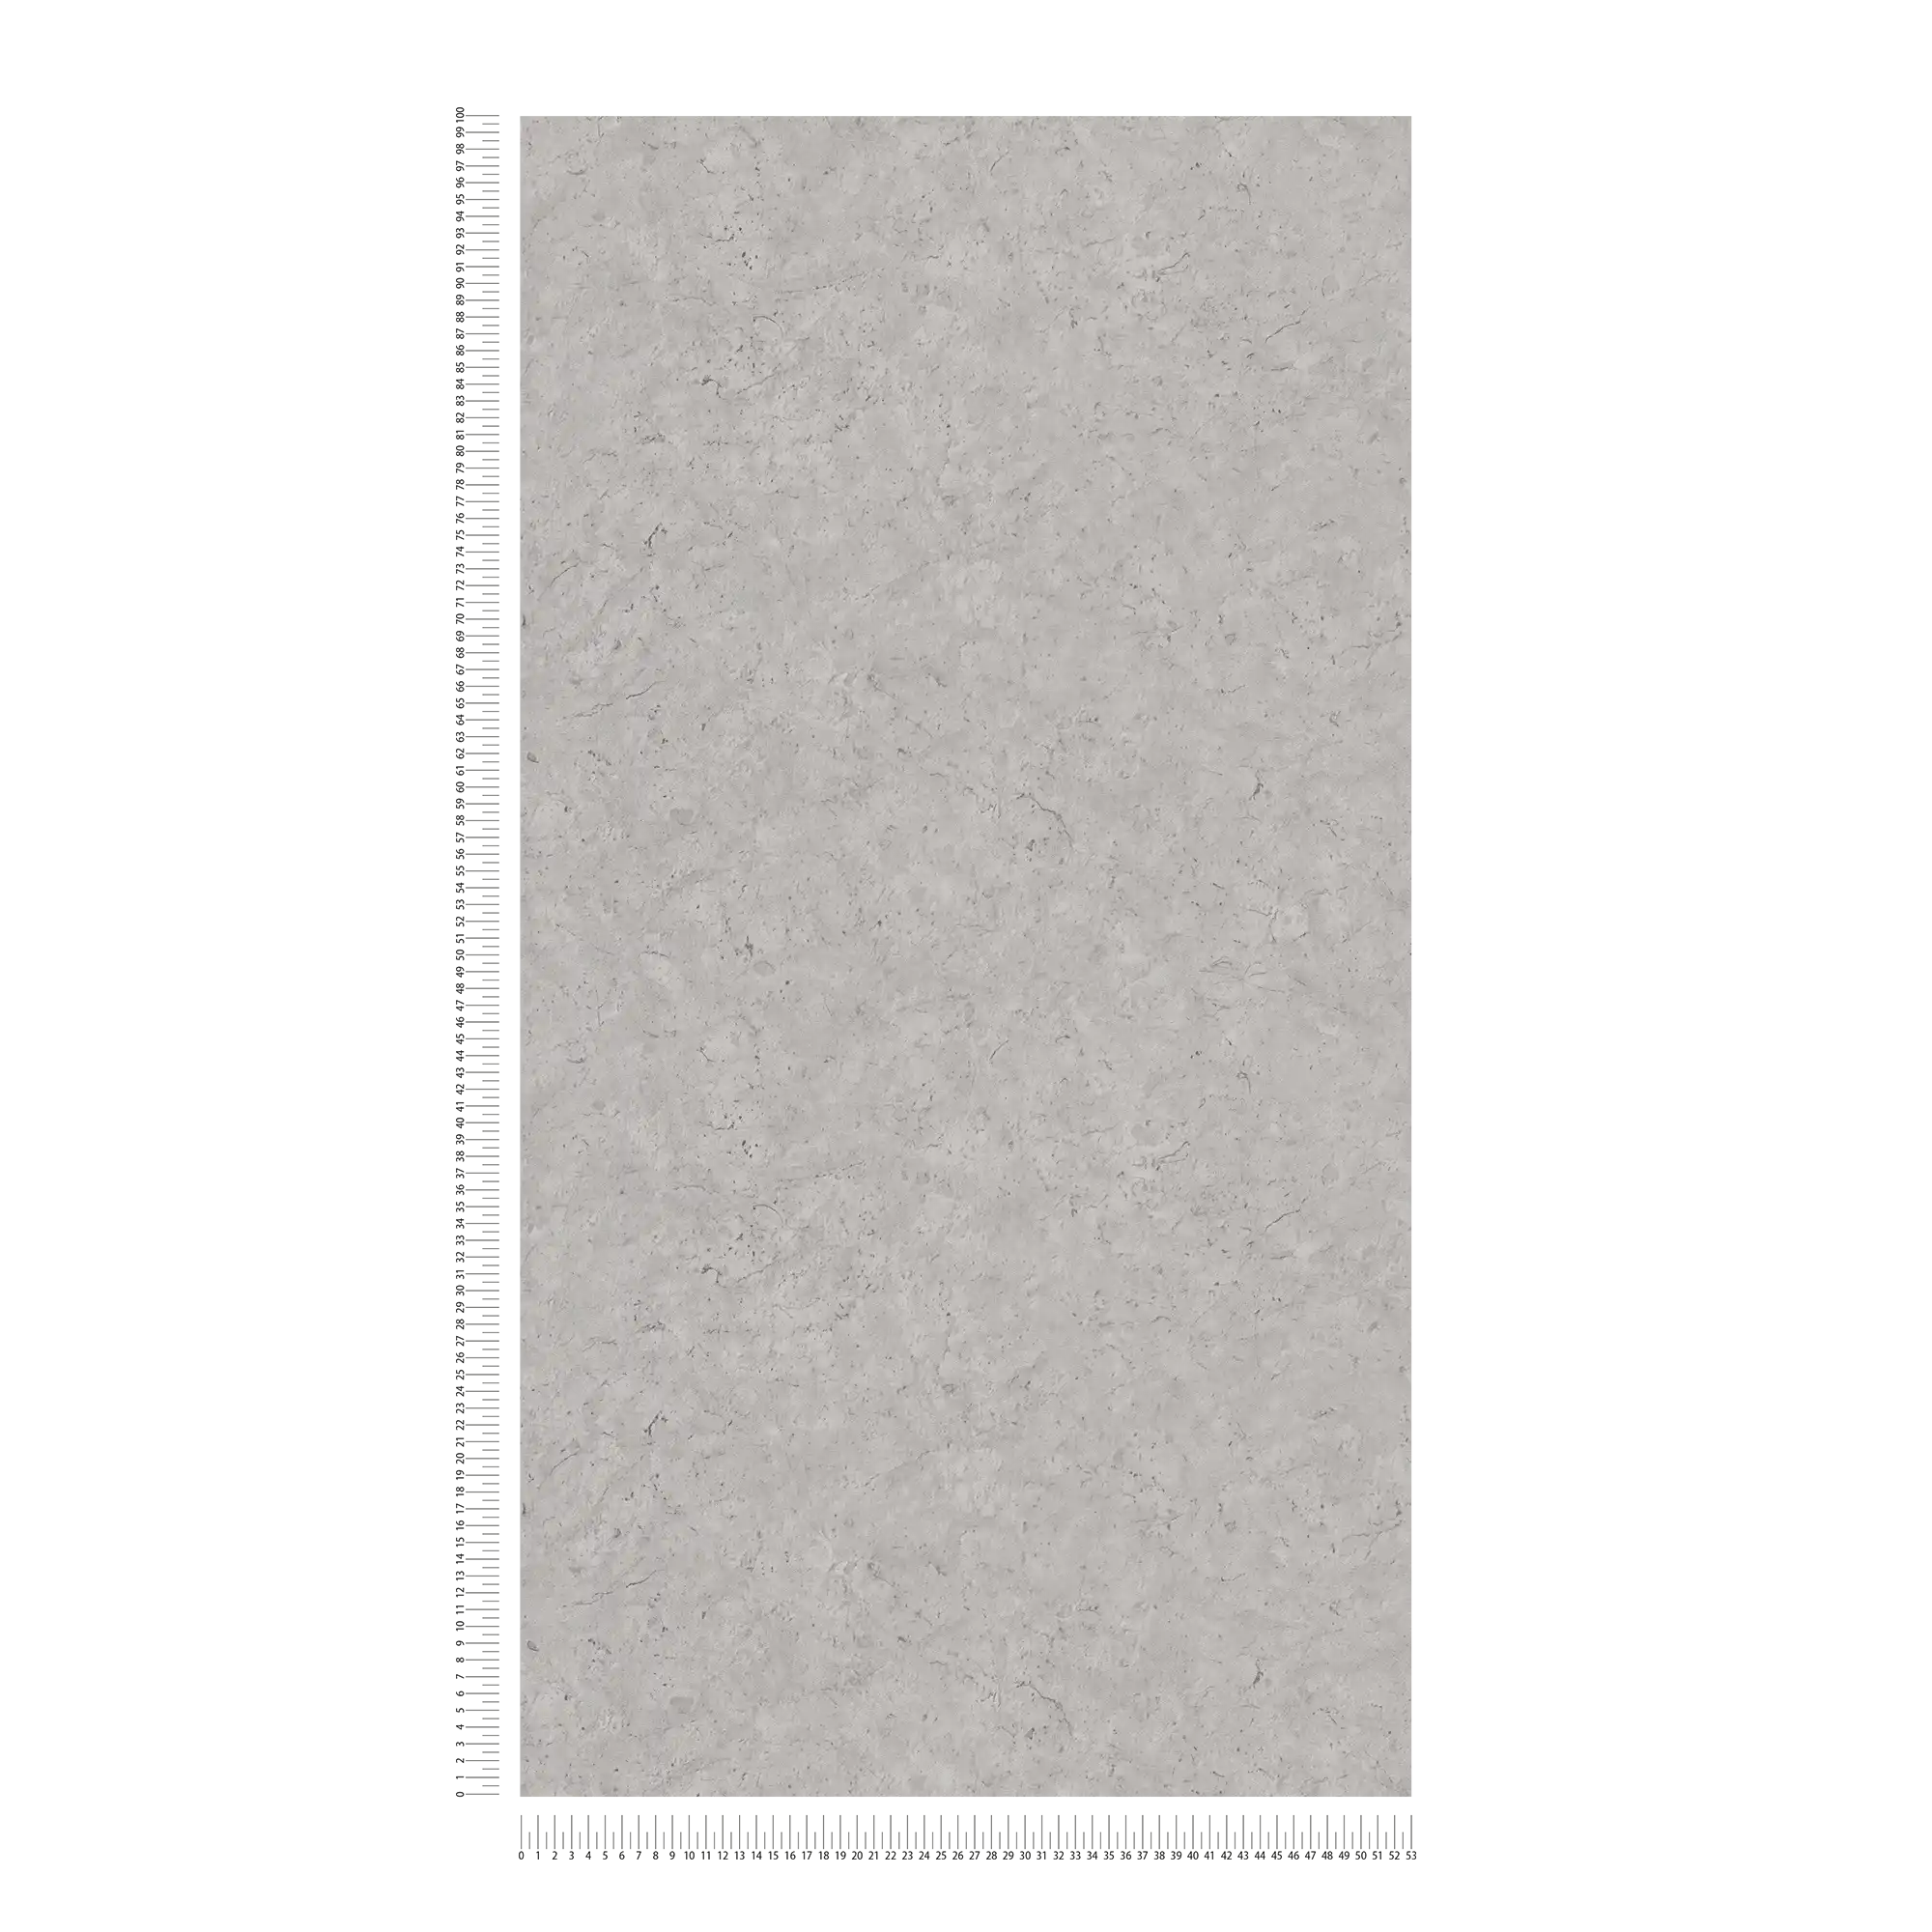             Papier peint imitation béton avec motif discret - gris
        